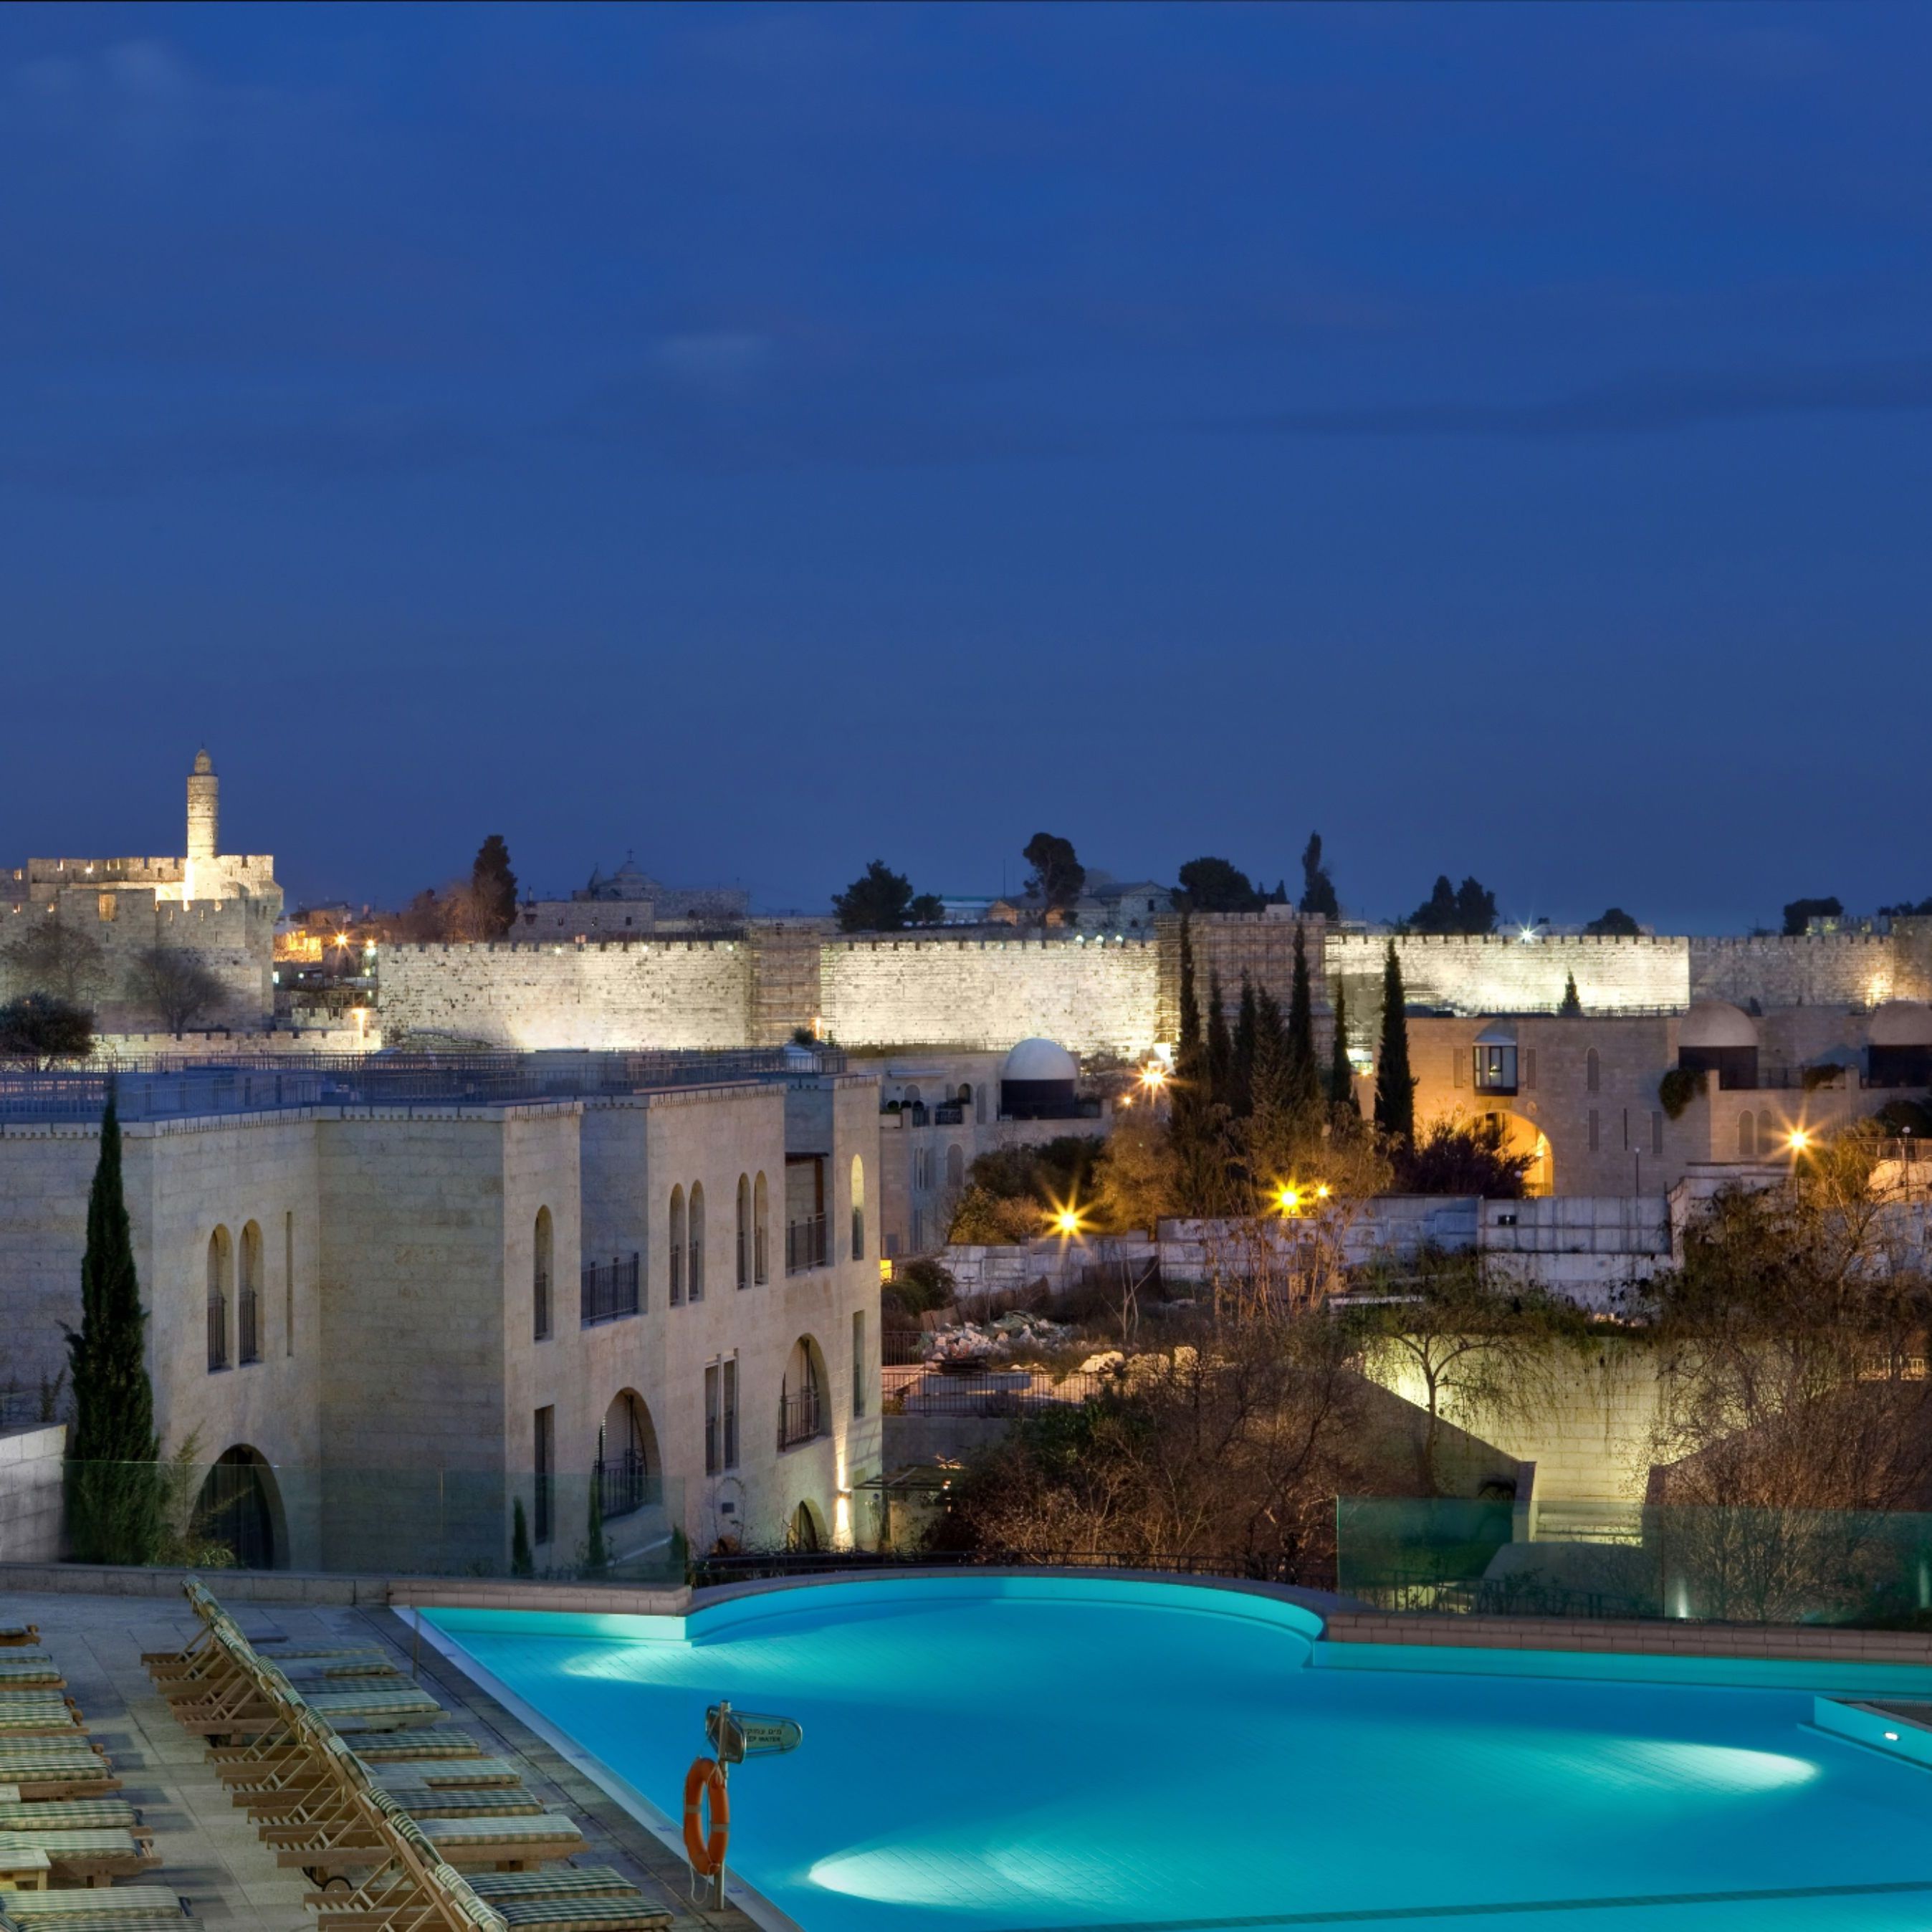 מלון יוקרה ירושלים | מצודת דוד - נוף נשקף מסוויטה